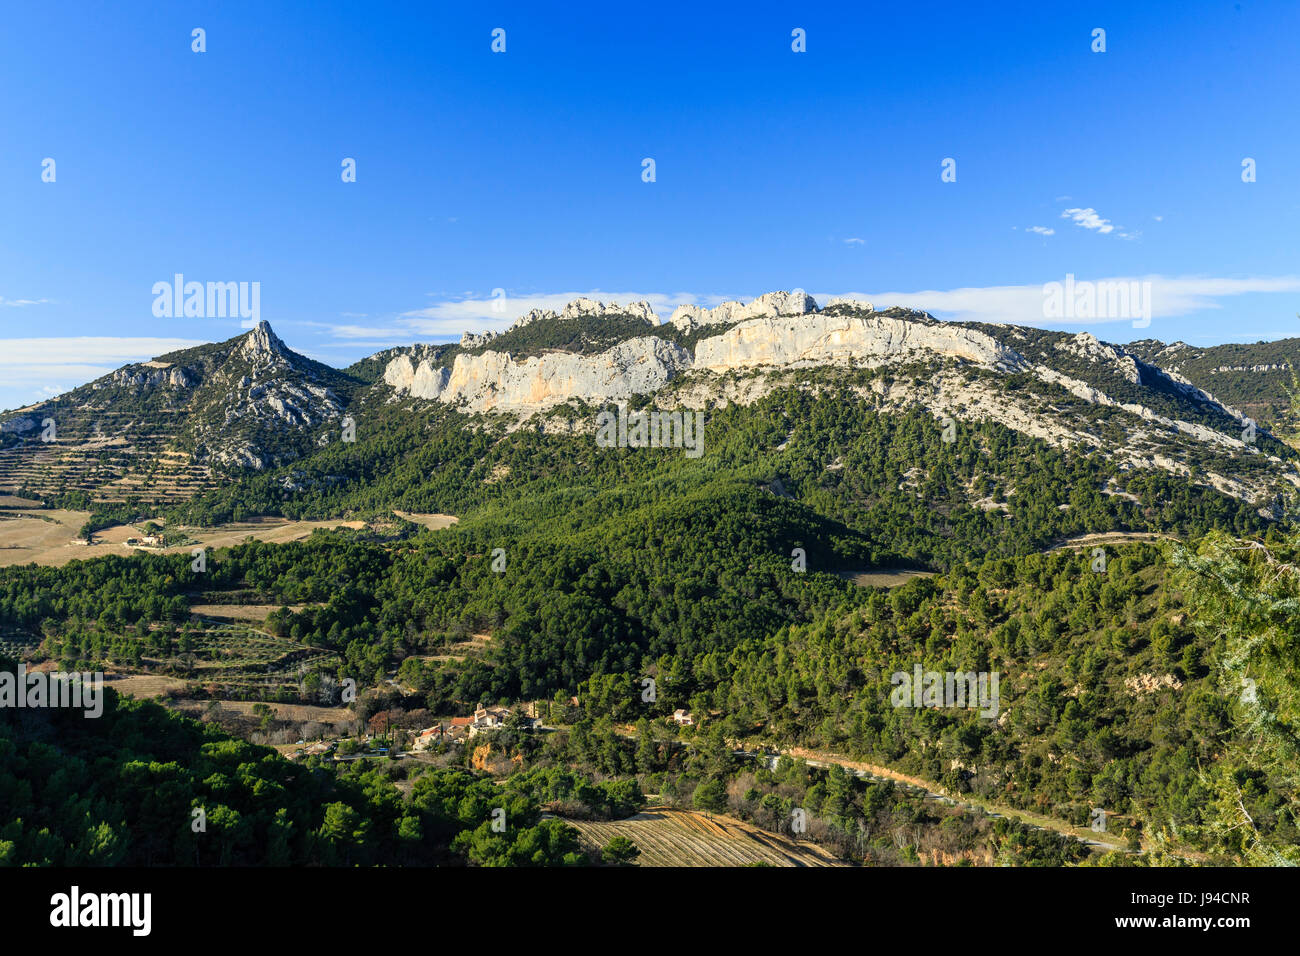 France, Vaucluse, La Roque-Alric, the Dentelles de Montmirail seen from the village Stock Photo